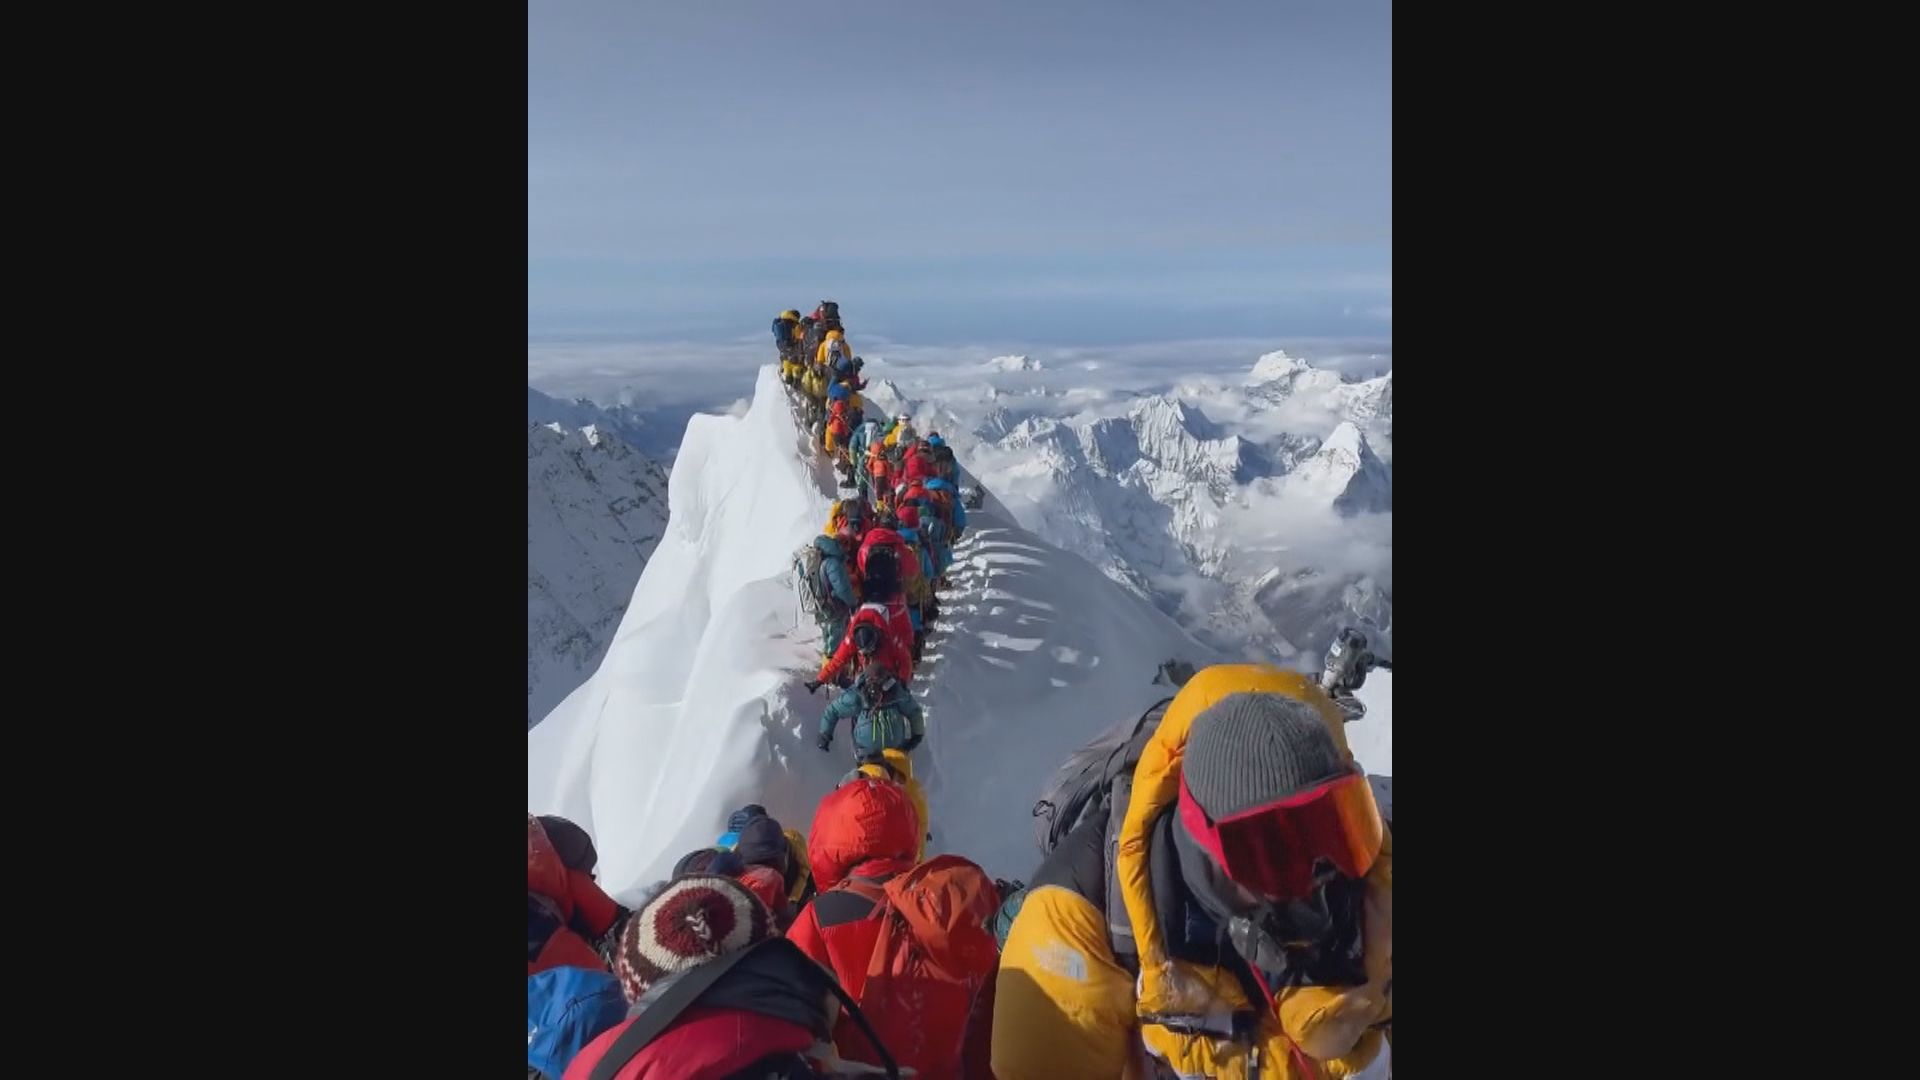 珠穆朗瑪峰春天登山季 一個多月已錄得5死3失蹤